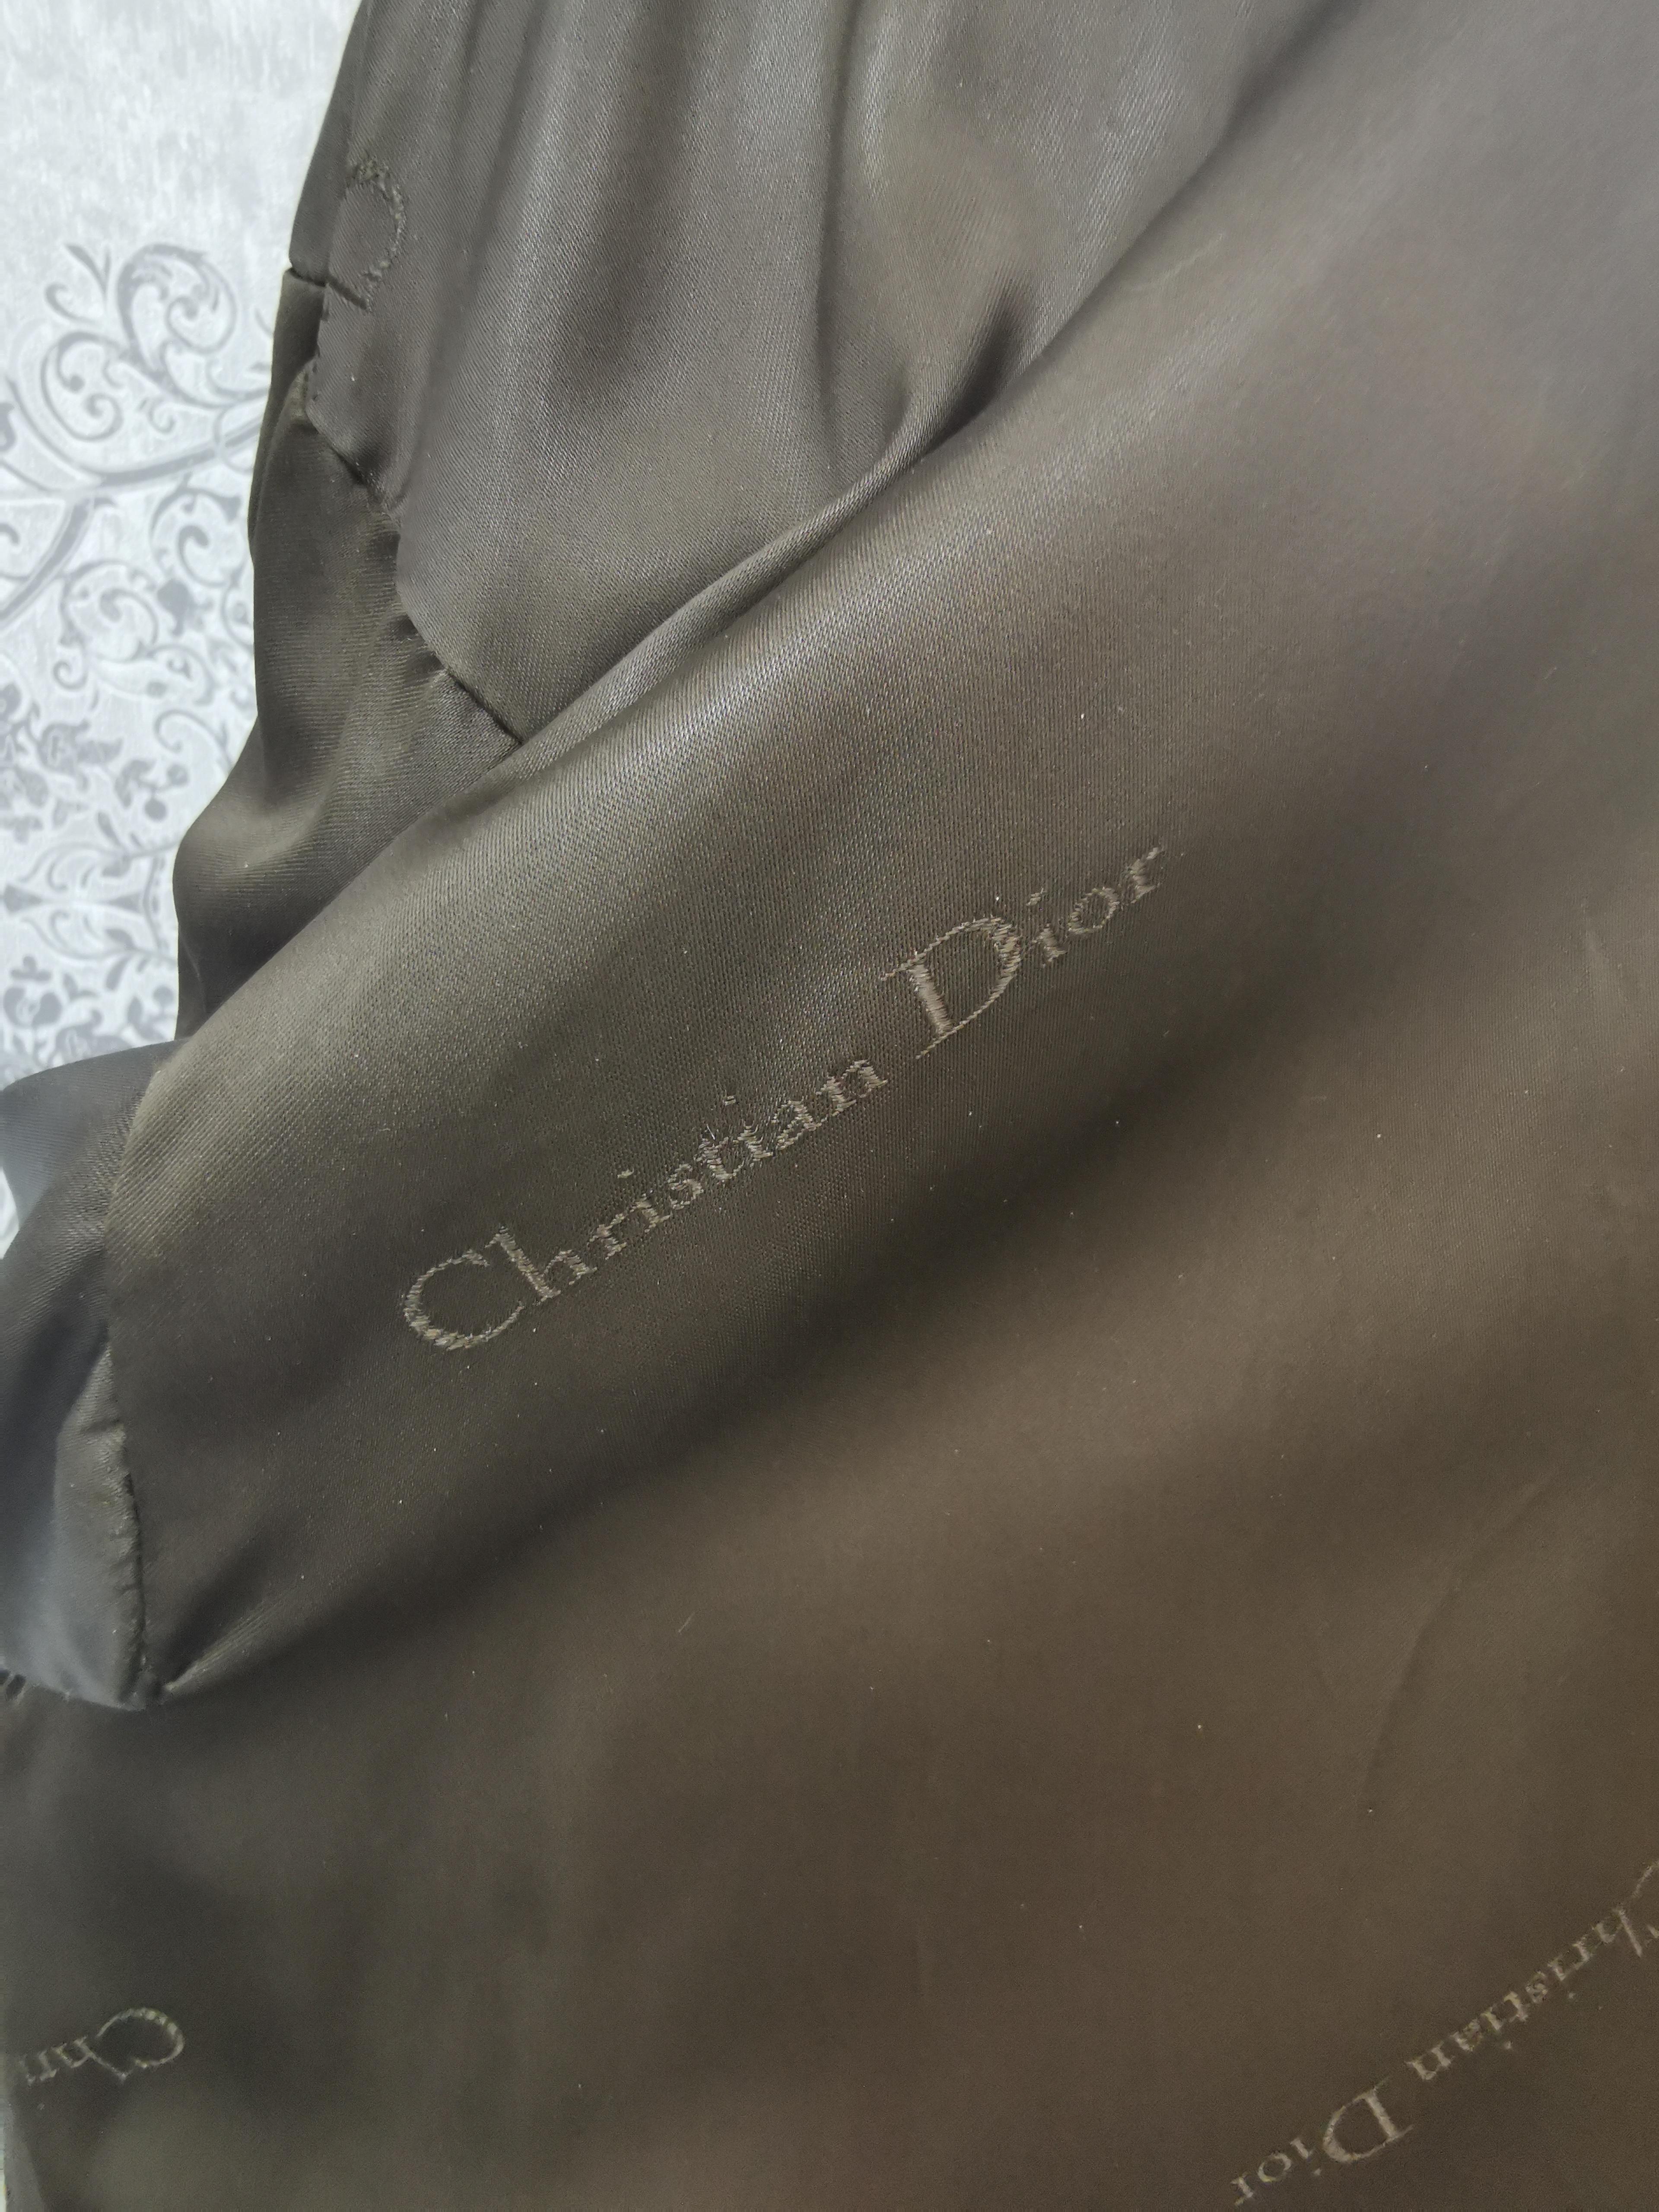 Christian dior mink fur coat size 18 For Sale 3